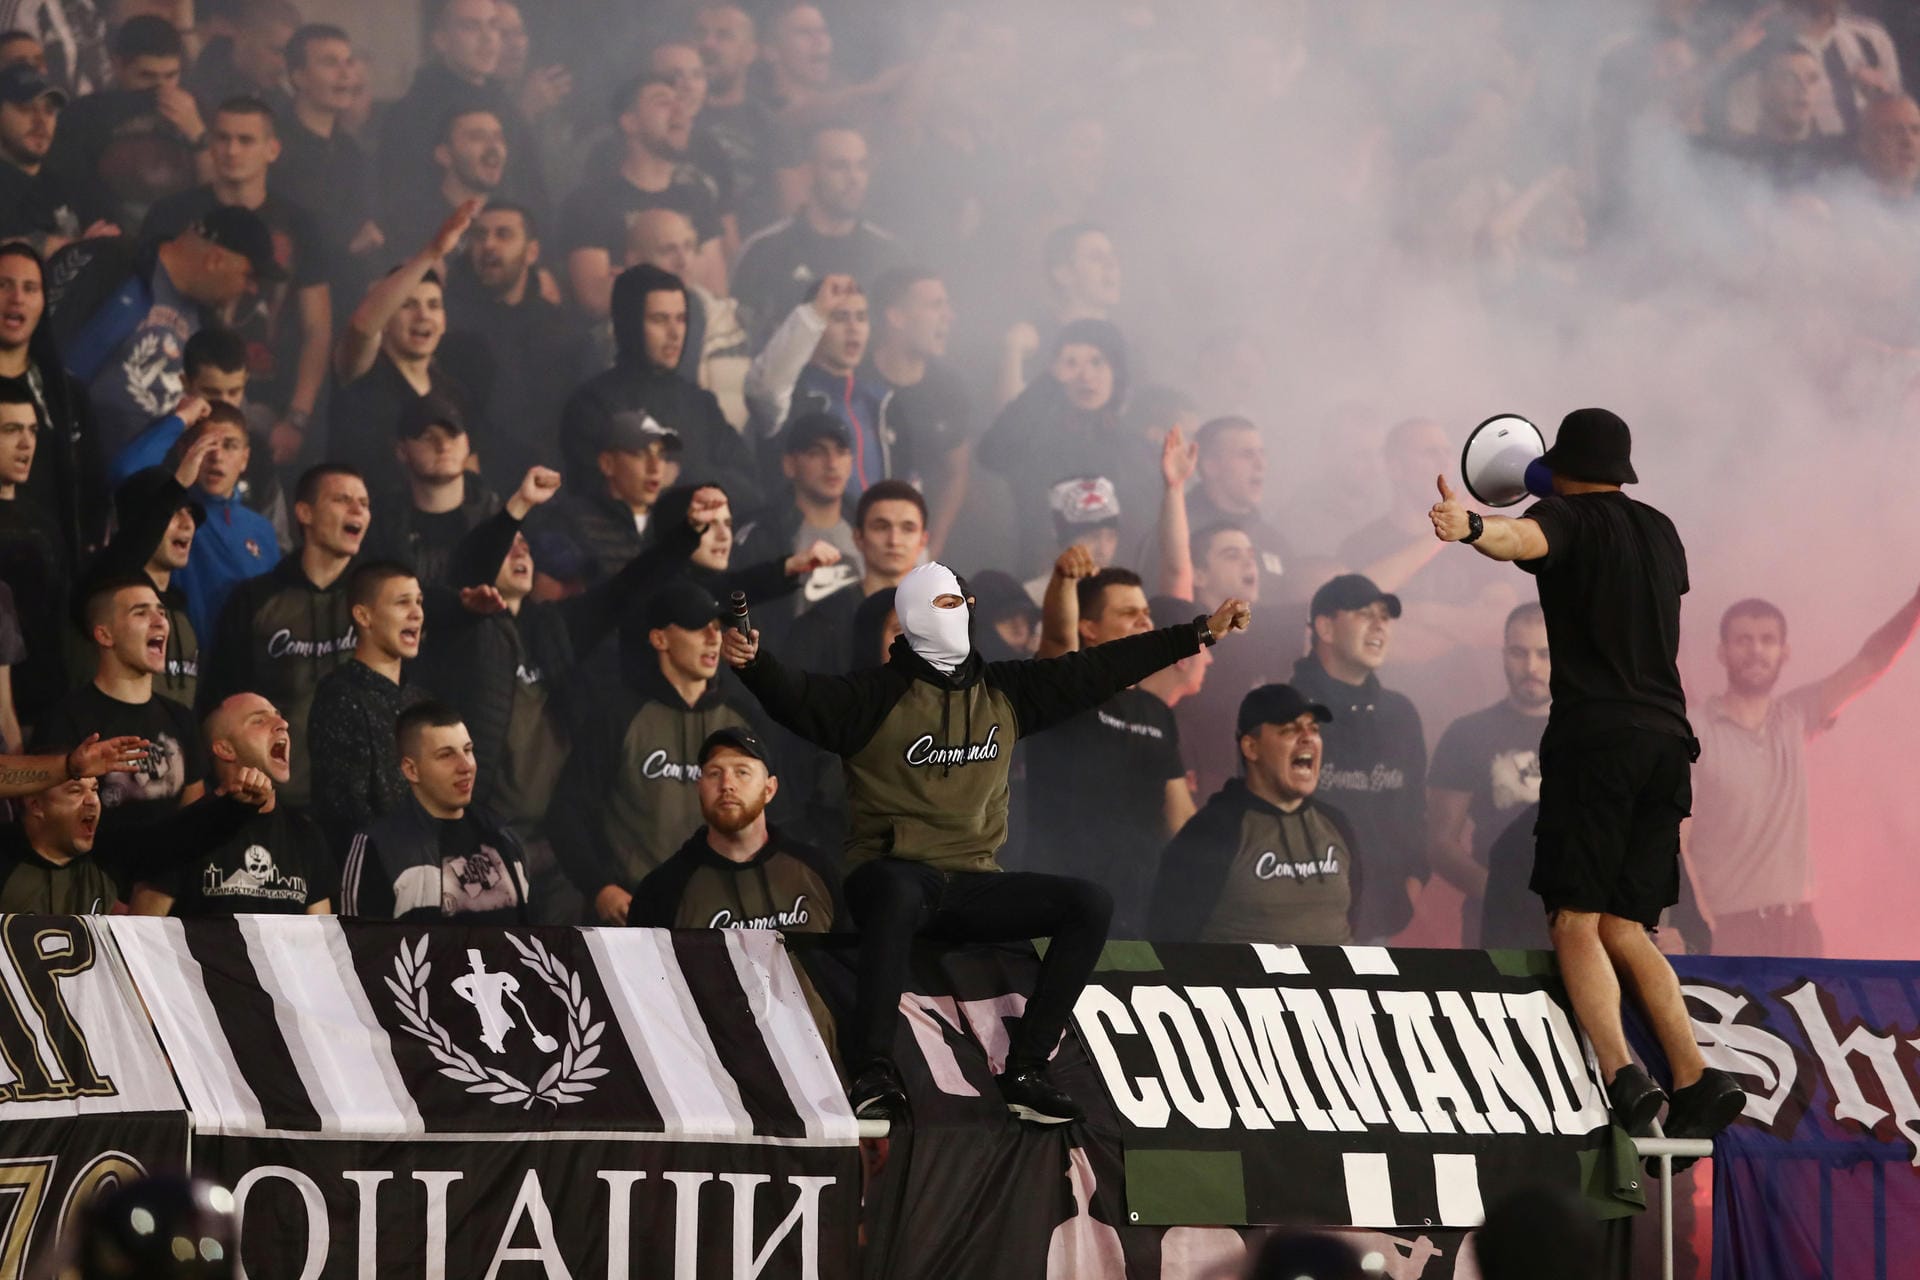 Die Partizan-Fans "Grobari", zu deutsch Totengräber, gaben auf den Rängen alles, um ihre Mannschaft zum Erfolg zu führen.